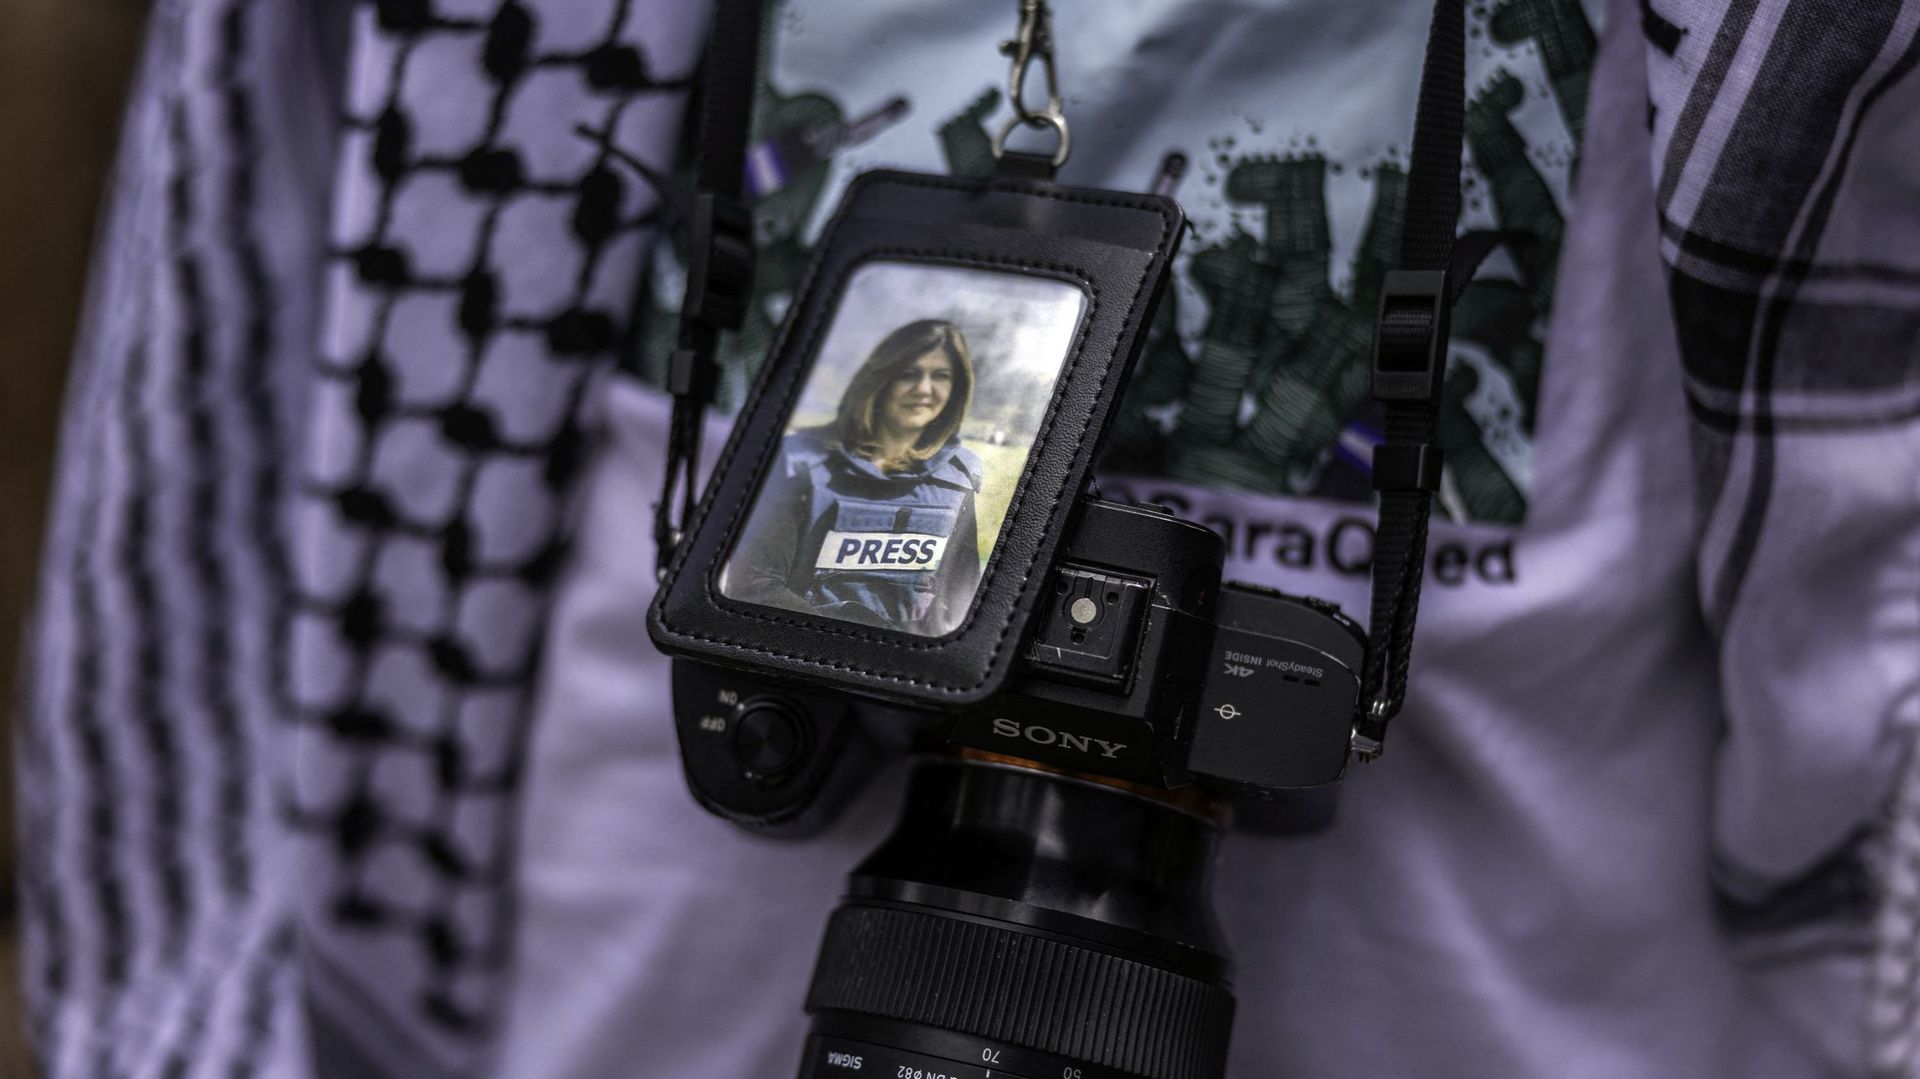 Des soldats de l’armée israélienne ont tiré sur la journaliste d’Al Jazeera, selon CNN.